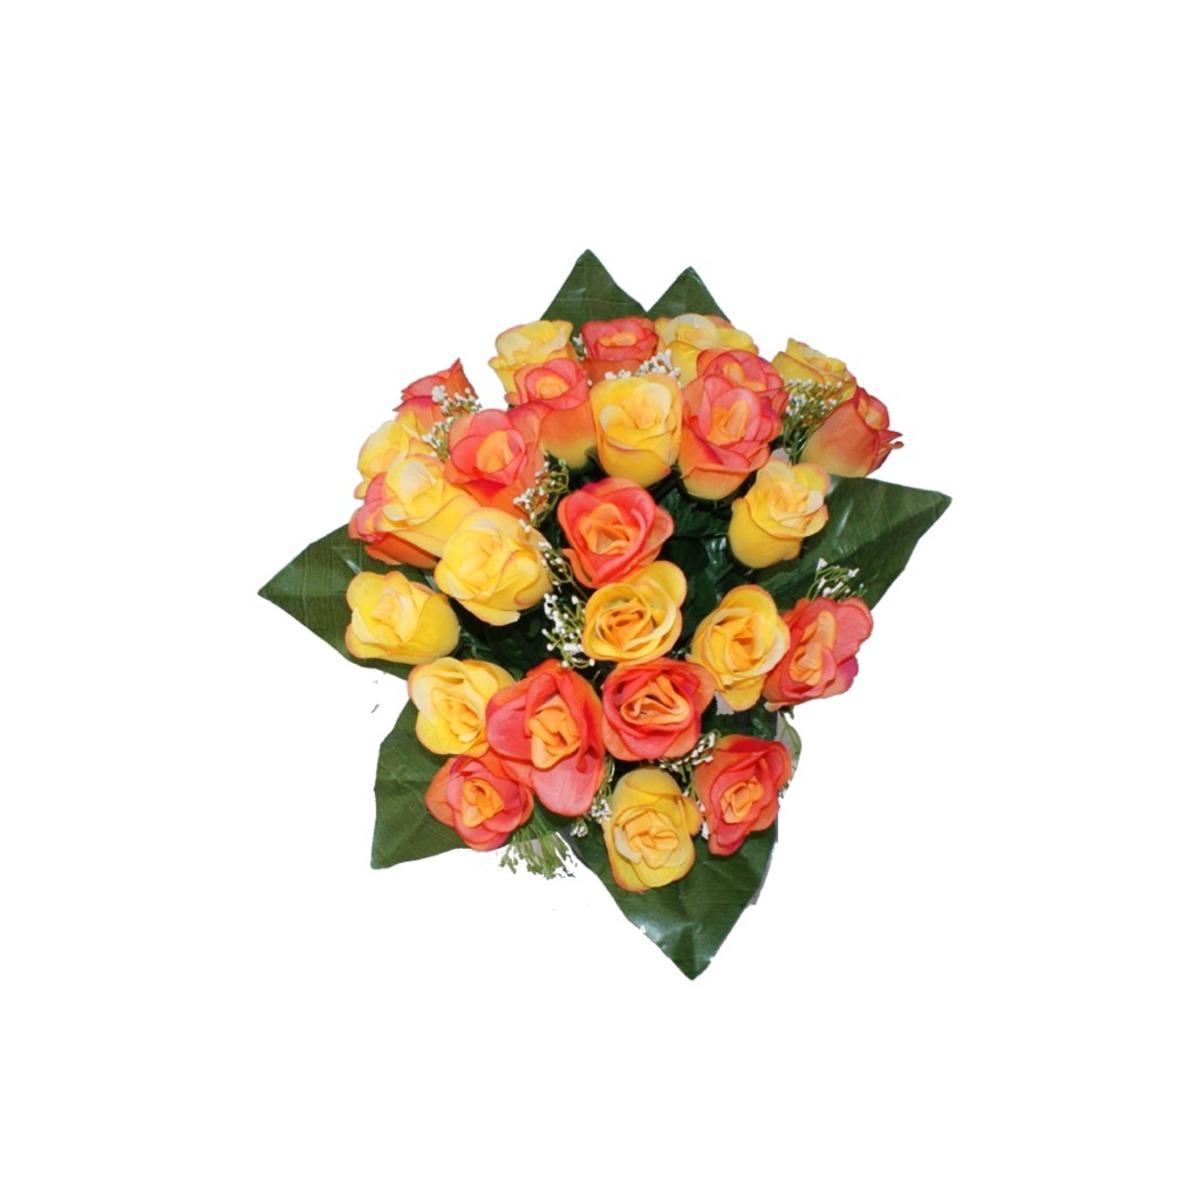 Piquet 27 roses luxe - Hauteur 40 cm - Rose saumon